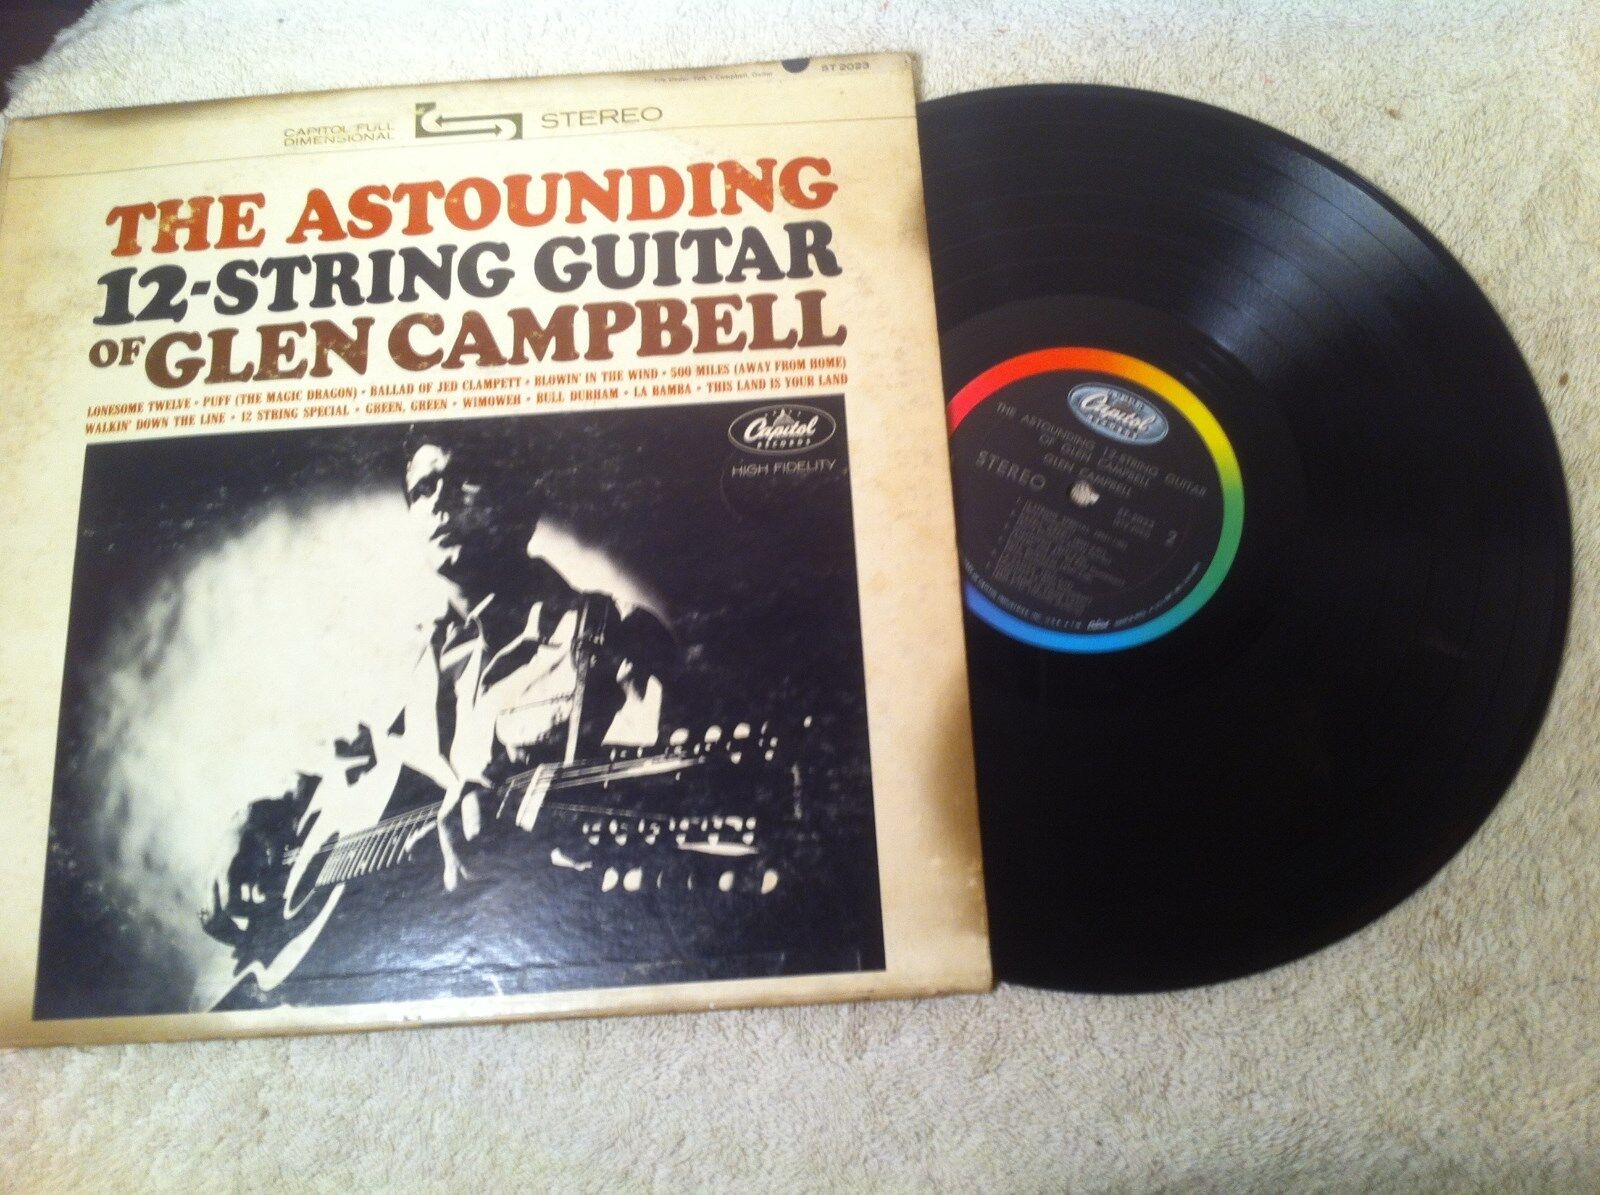 Vintage Astounding 12 String Guitar of Glenn Campbell Record Vinyl Album